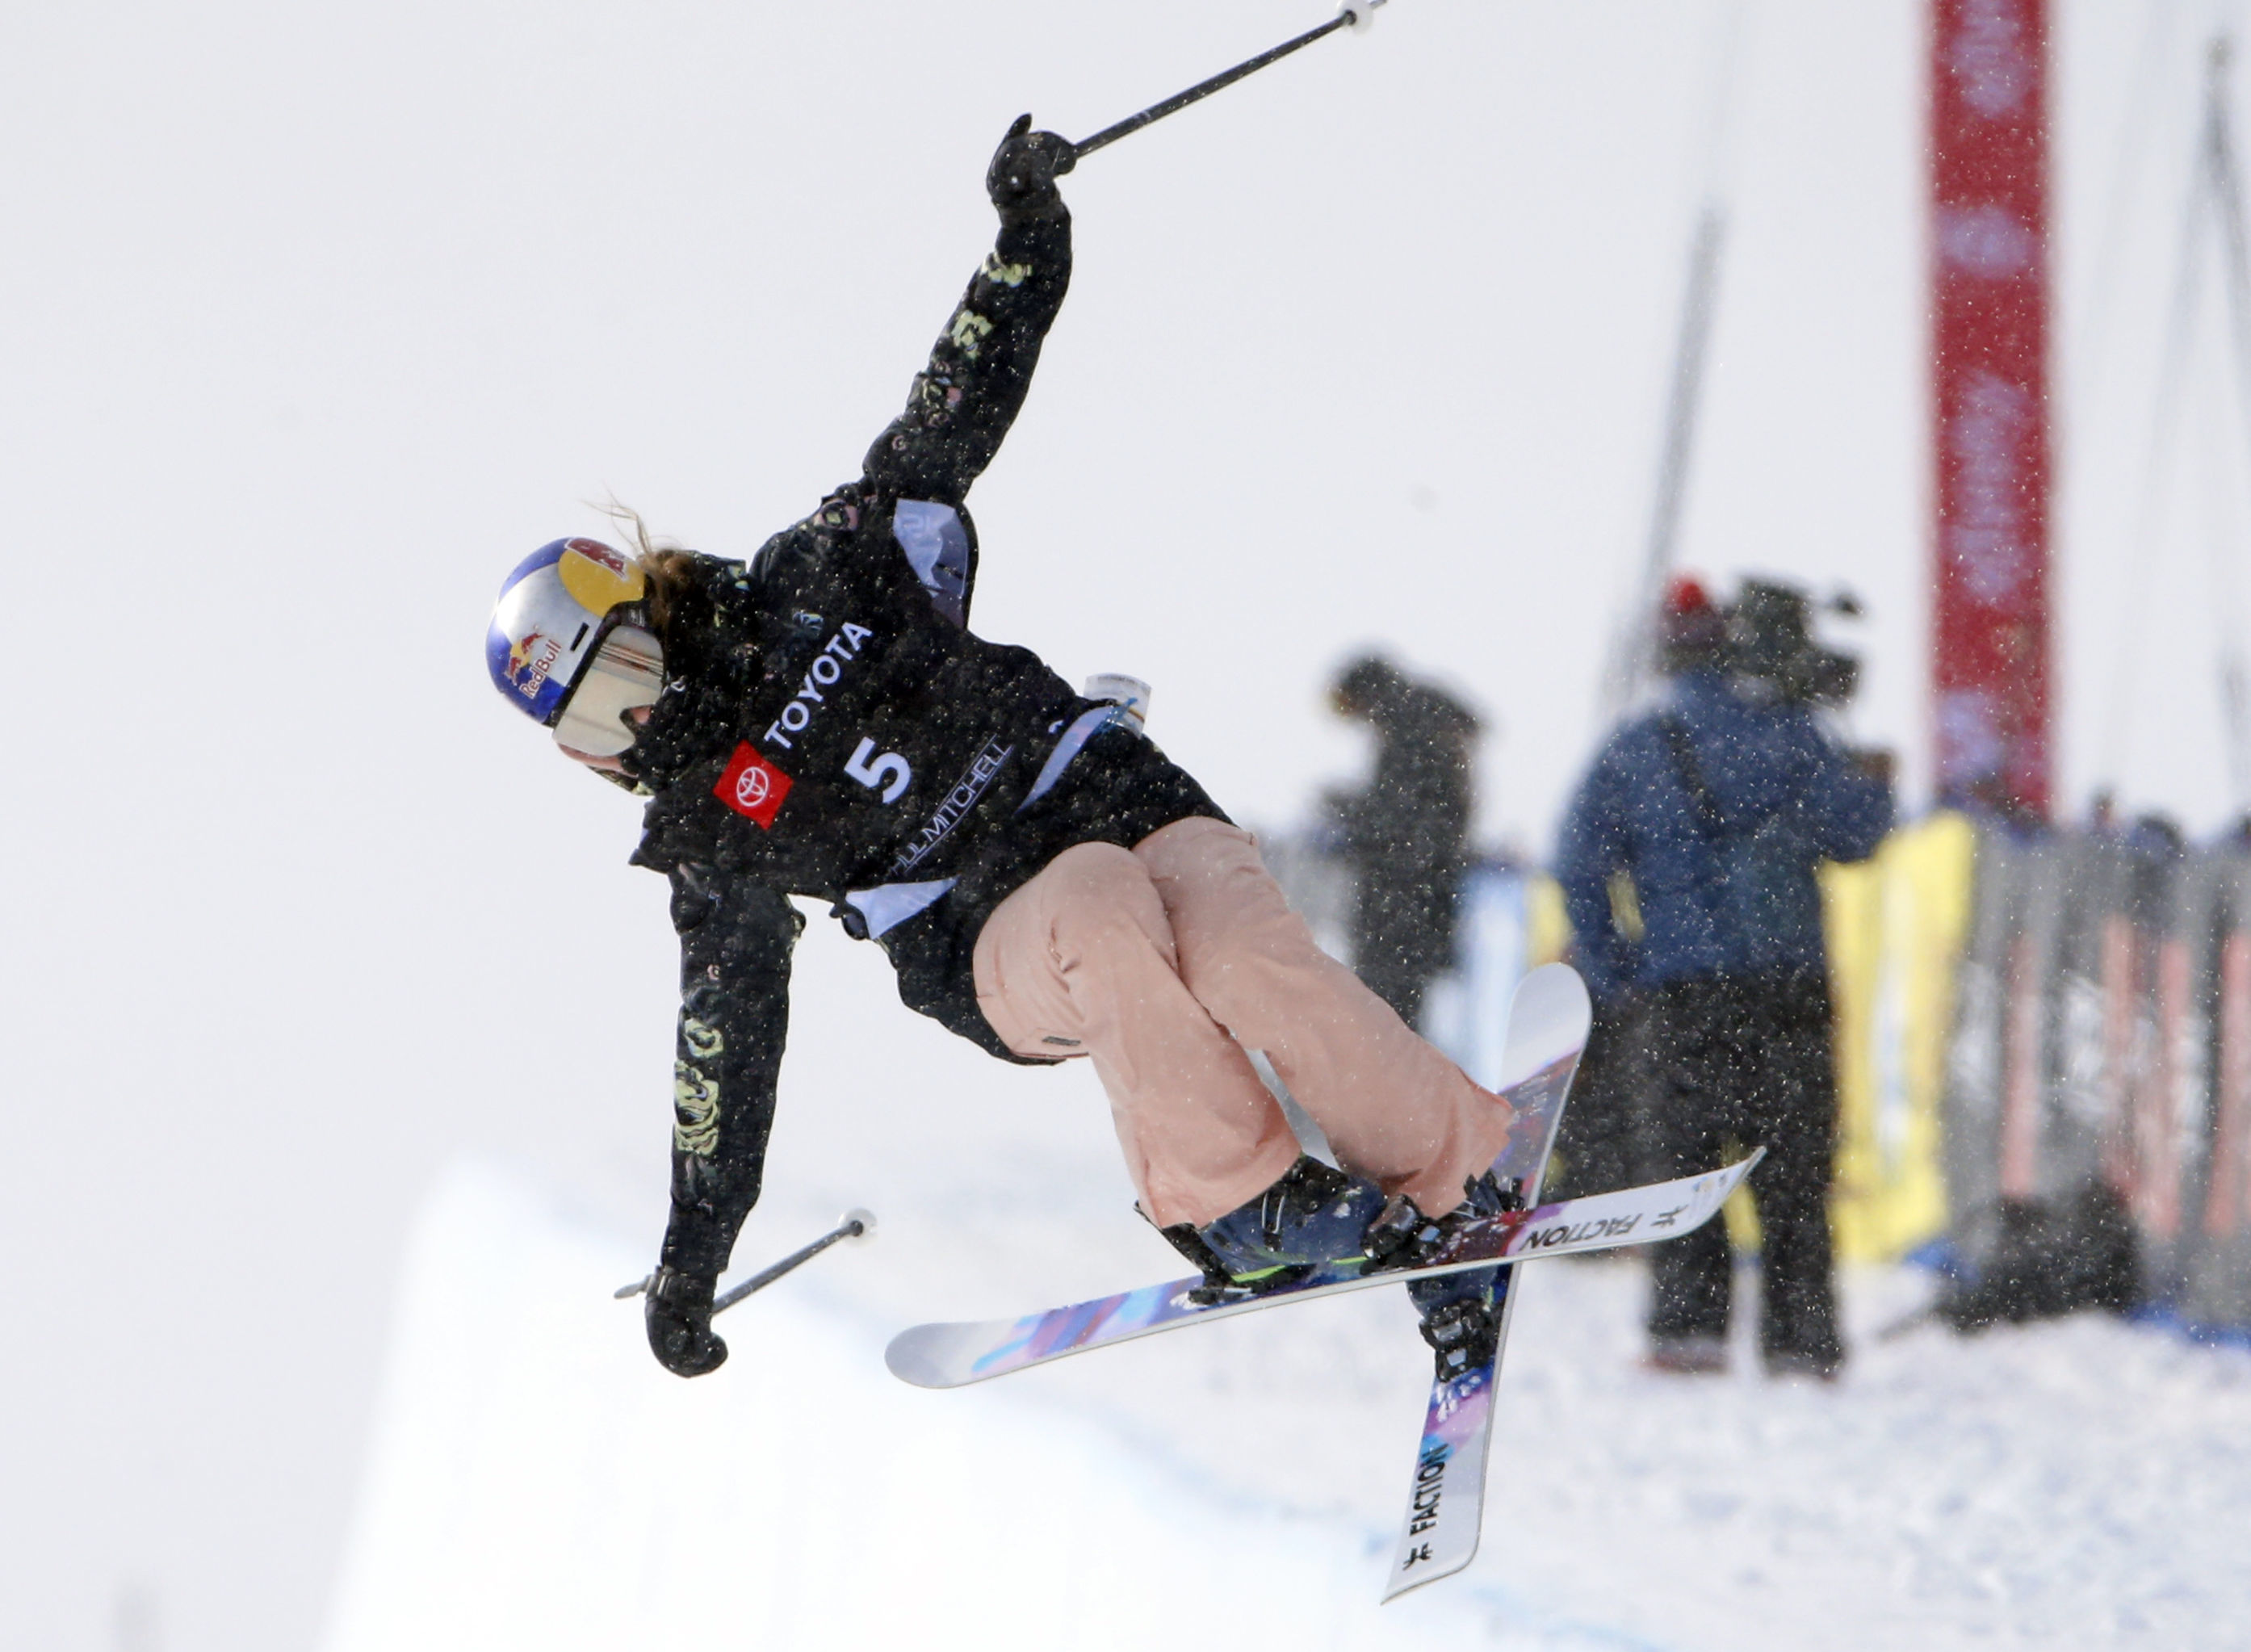 Келли Силдару участвует в отборочных соревнованиях на чемпионате мира по горнолыжному спорту среди женщин, 7 февраля 2019 года